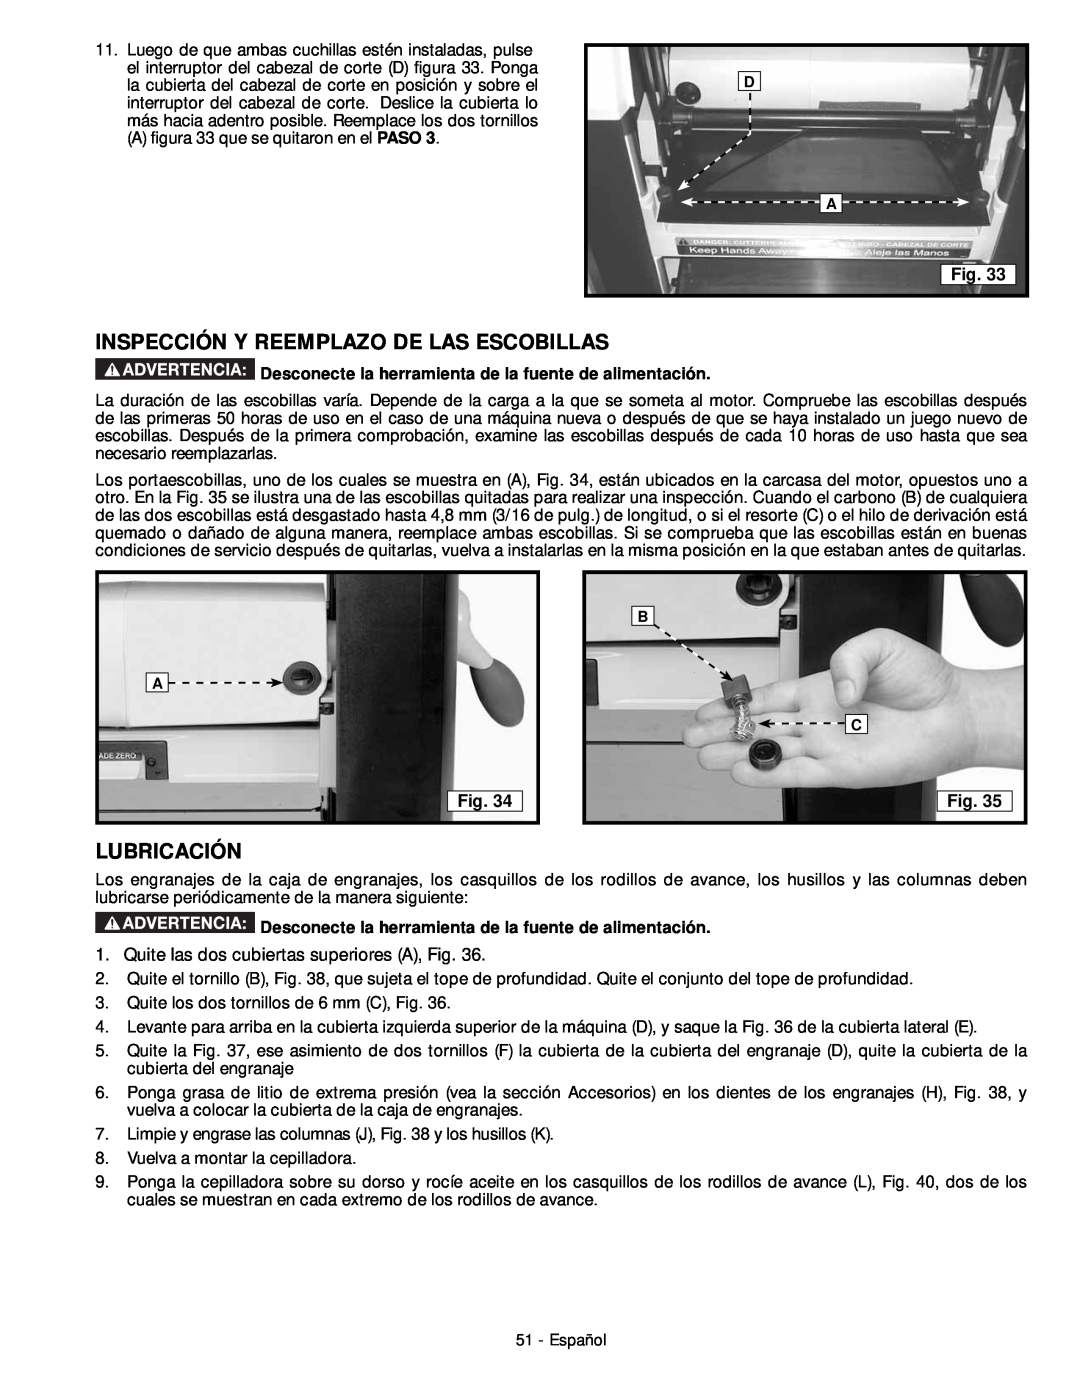 DeWalt 18657 Inspección Y Reemplazo De Las Escobillas, Lubricación, Desconecte la herramienta de la fuente de alimentación 